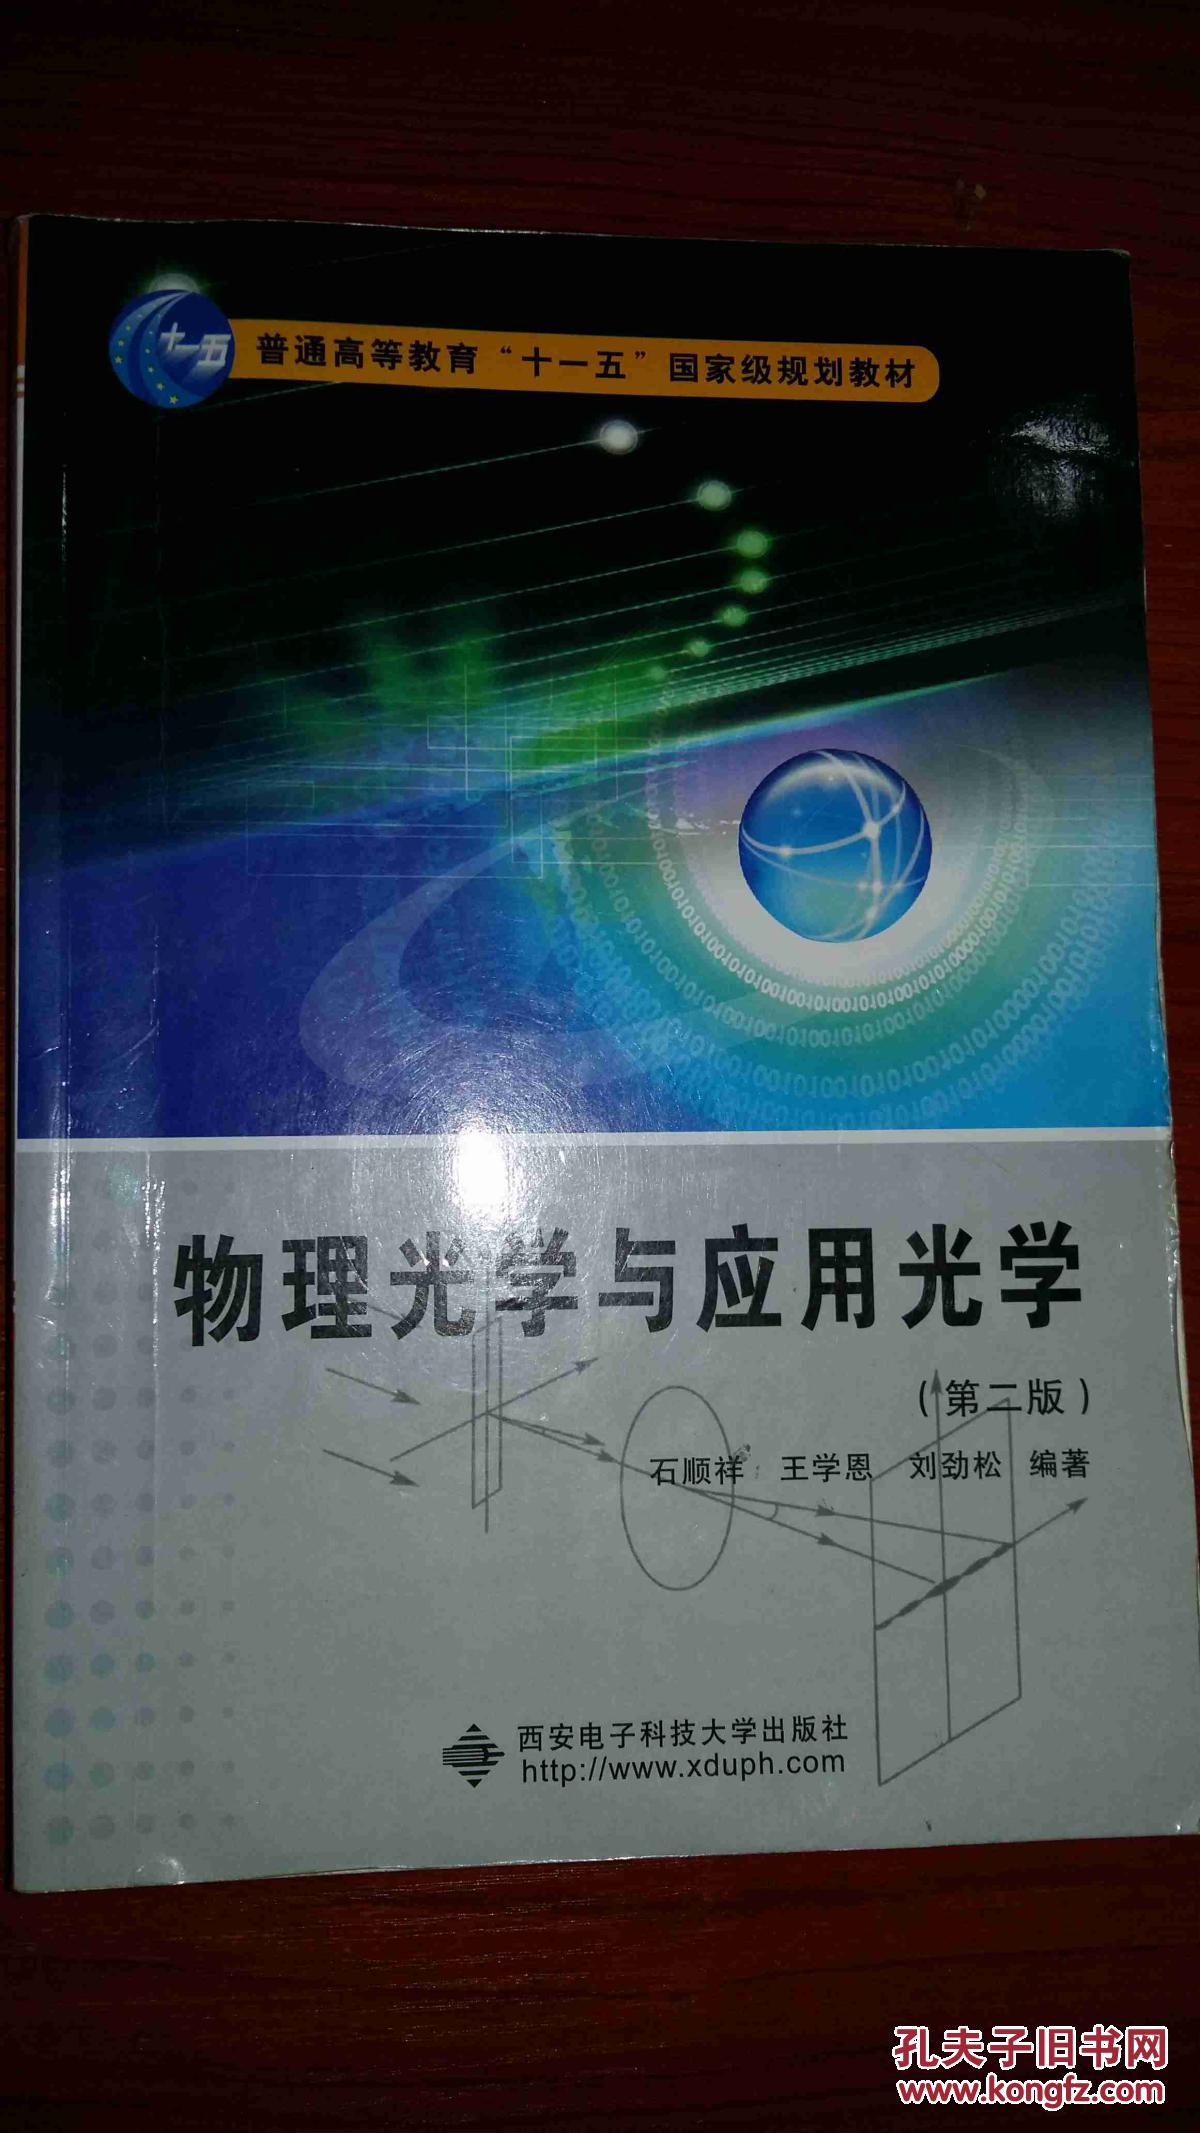 【图】物理光学与应用光学第二版._价格:5.00_